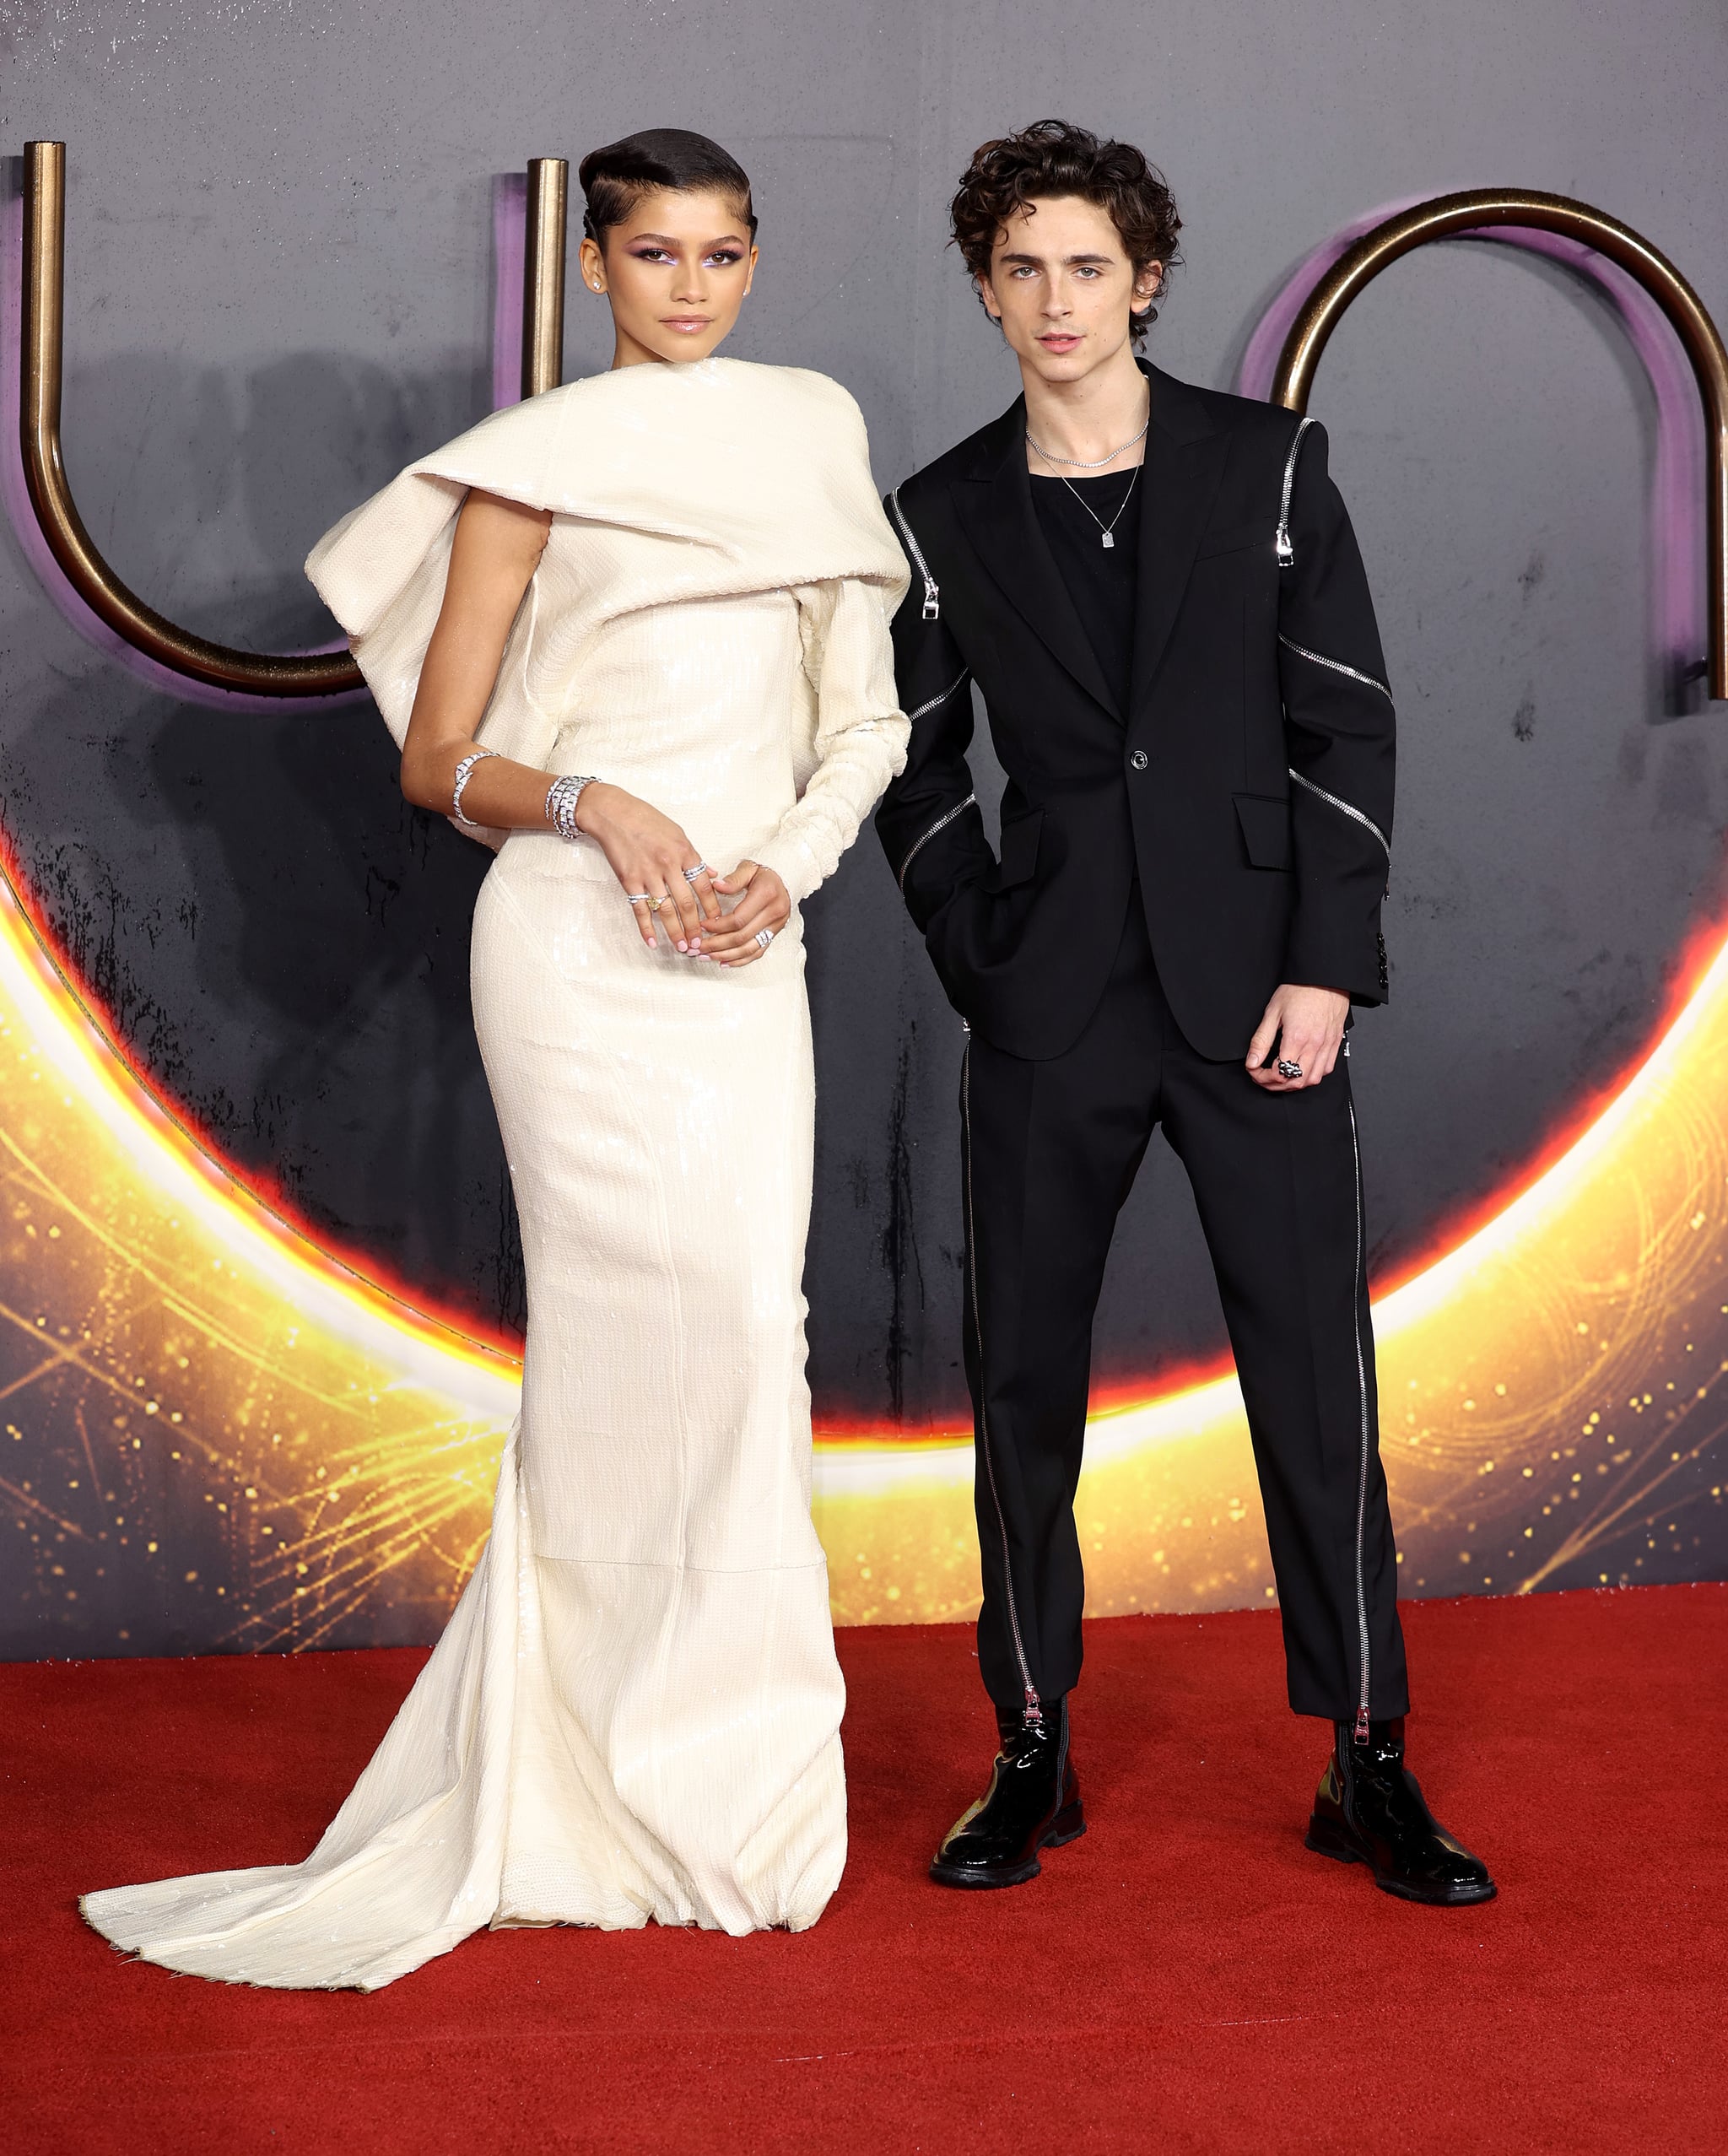 Zendaya and Timothee Chalamat Reunite at the 2022 Oscars